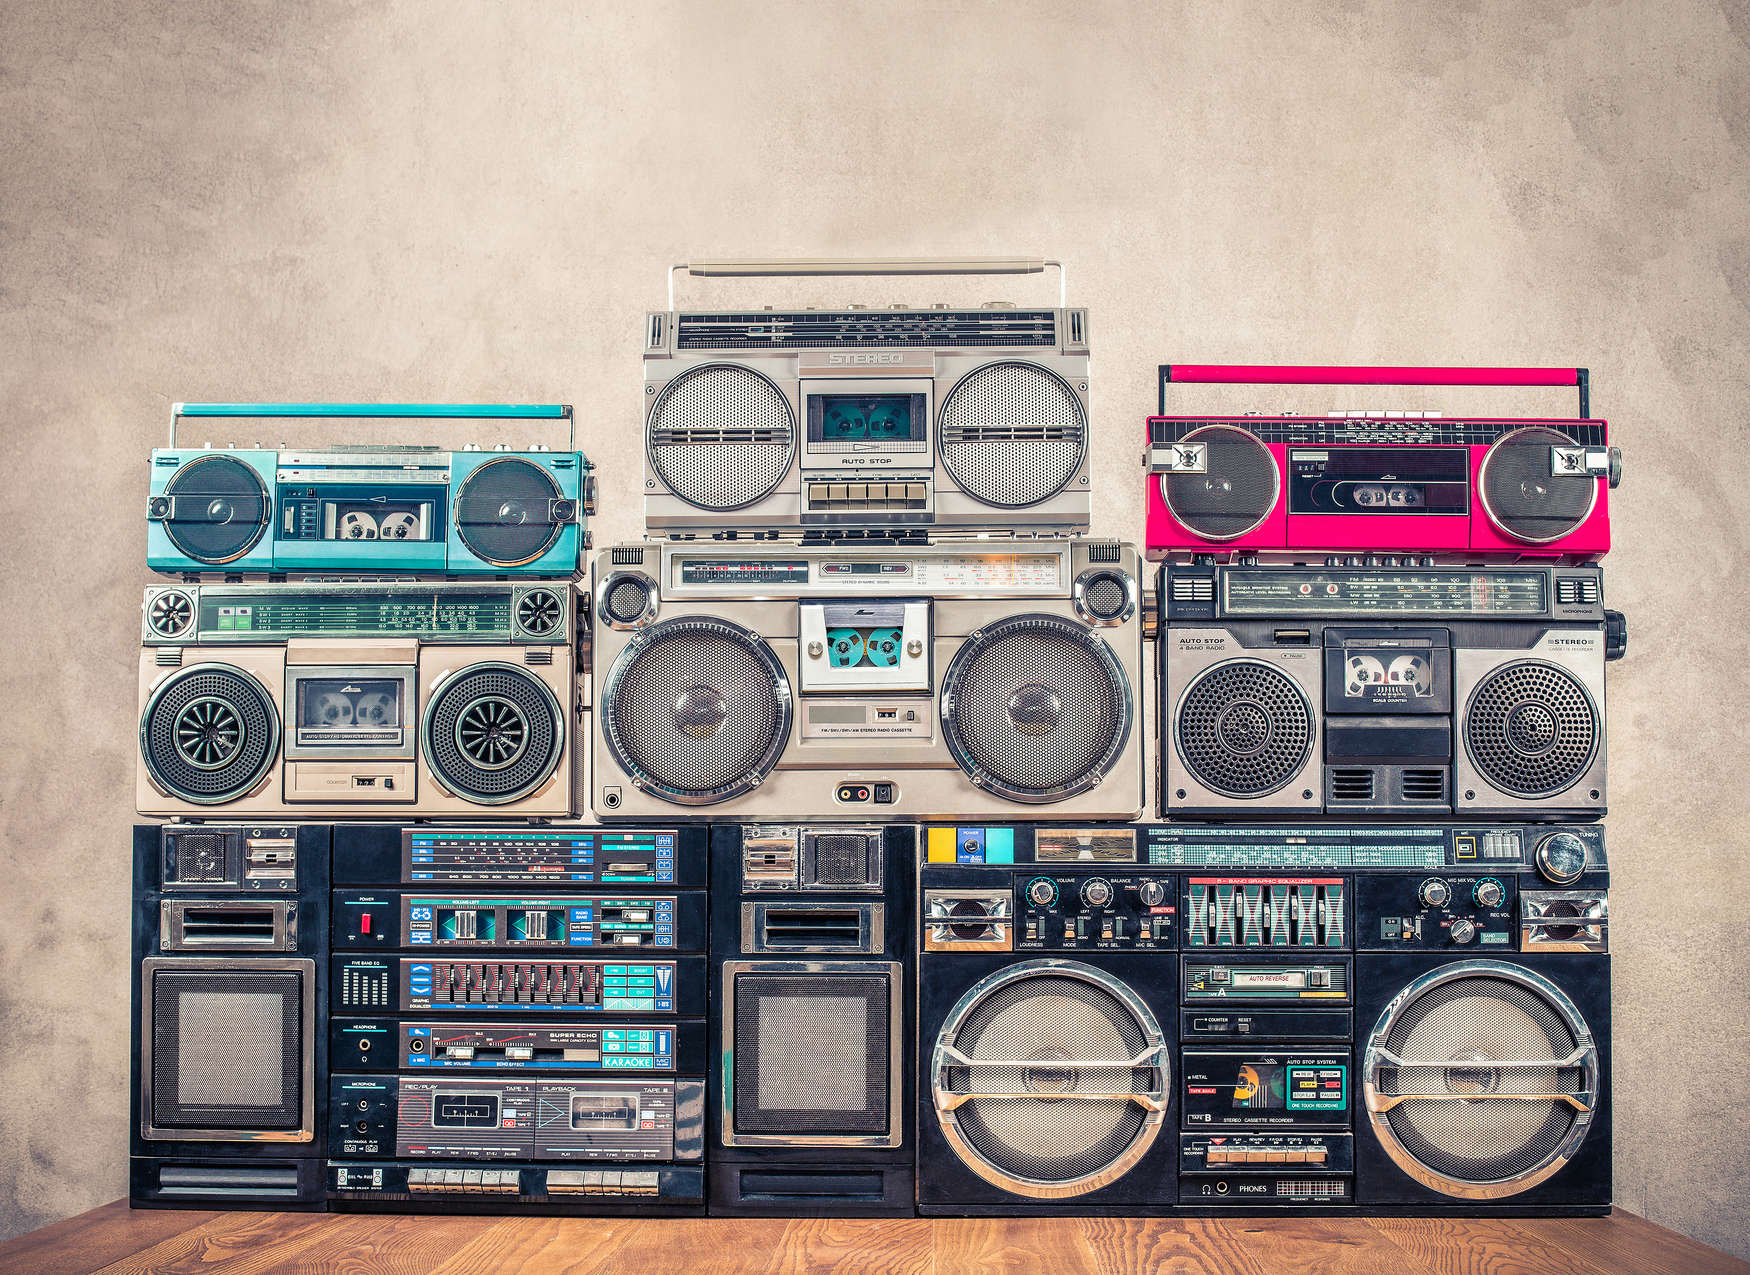             Digital behang Radio's op houten tafel voor de muur - Gekleurd, Beige
        